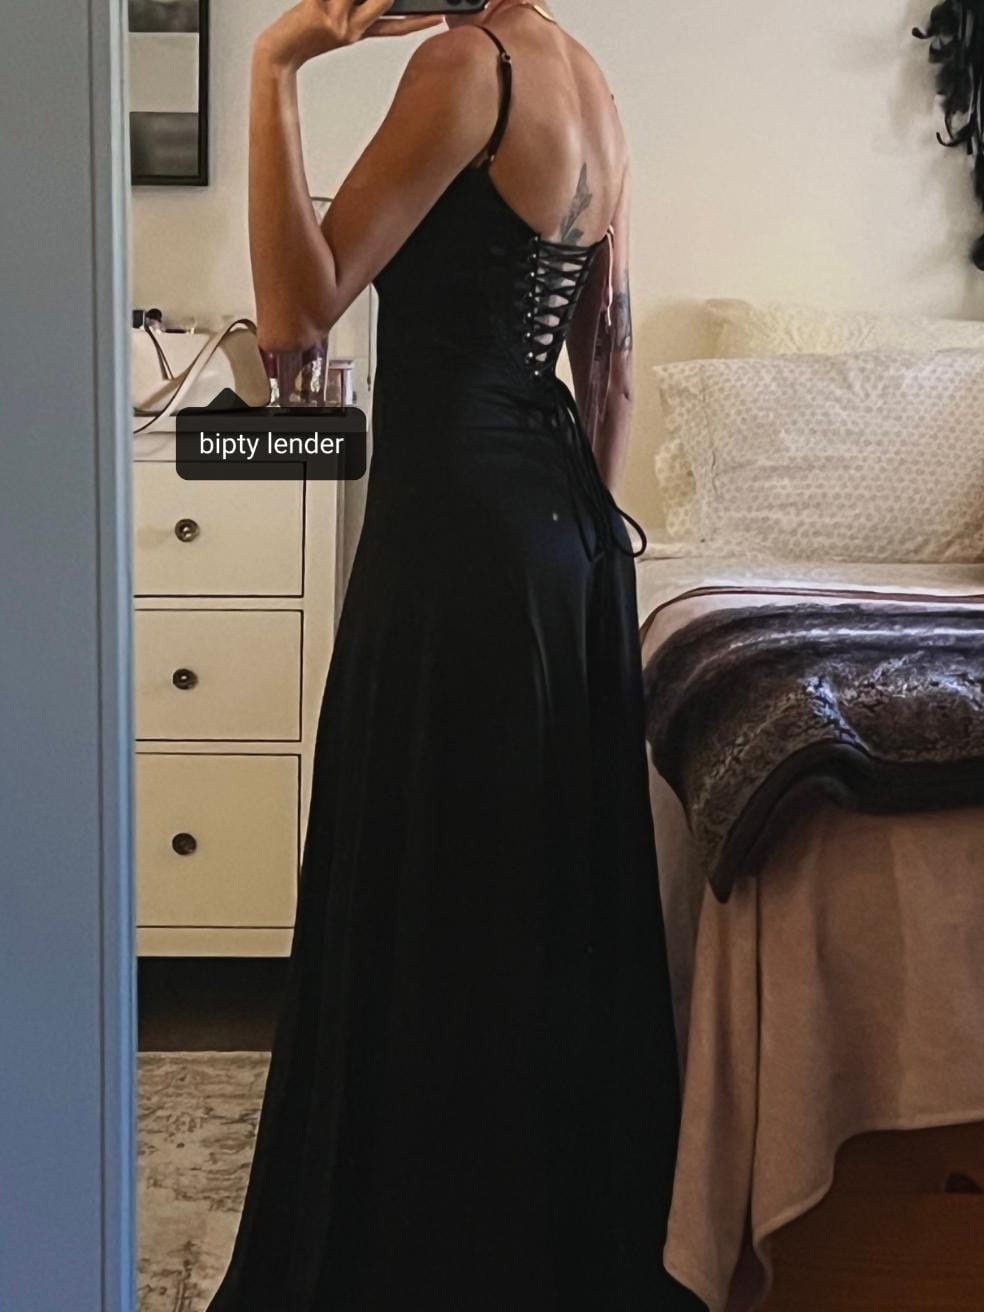 Anabella Black Lace Up Midi Dress